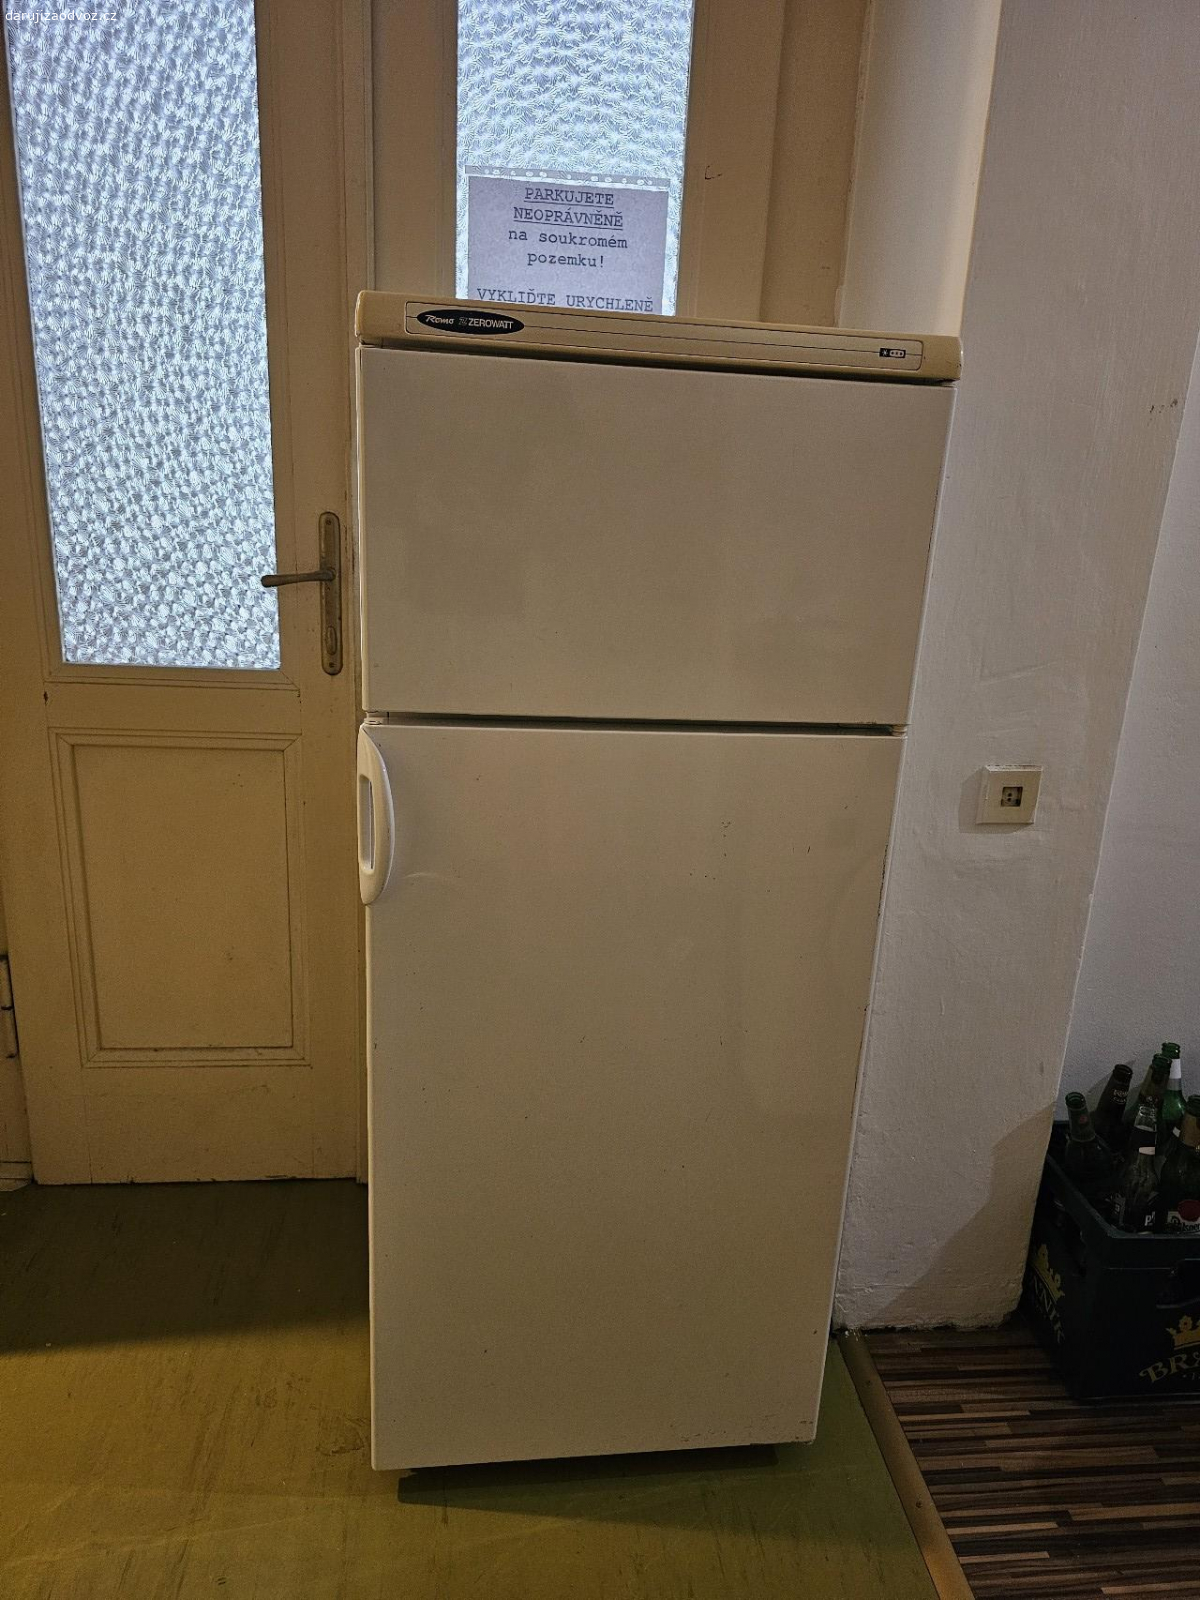 Lednička. Daruji kombinovanou lednici.

Nutno vlastní odvoz Praha 6, Bubeneč 
Spěchá